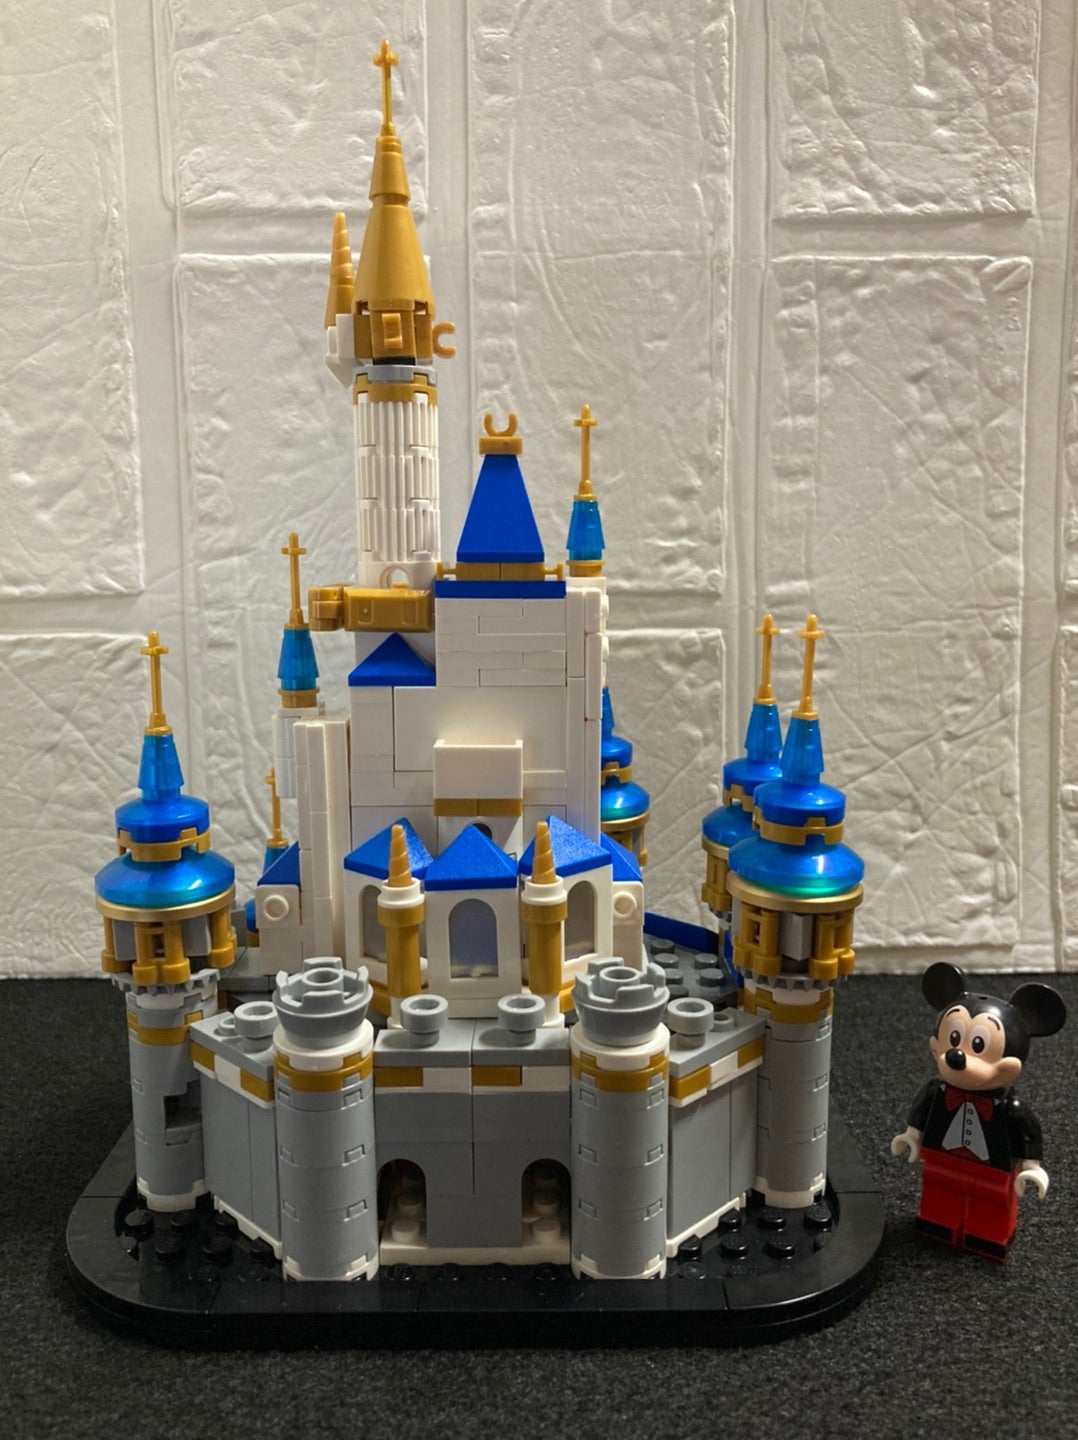 レゴ (LEGO) ディズニー・ミニキャッスル シンデレラ城 40478を作って ...